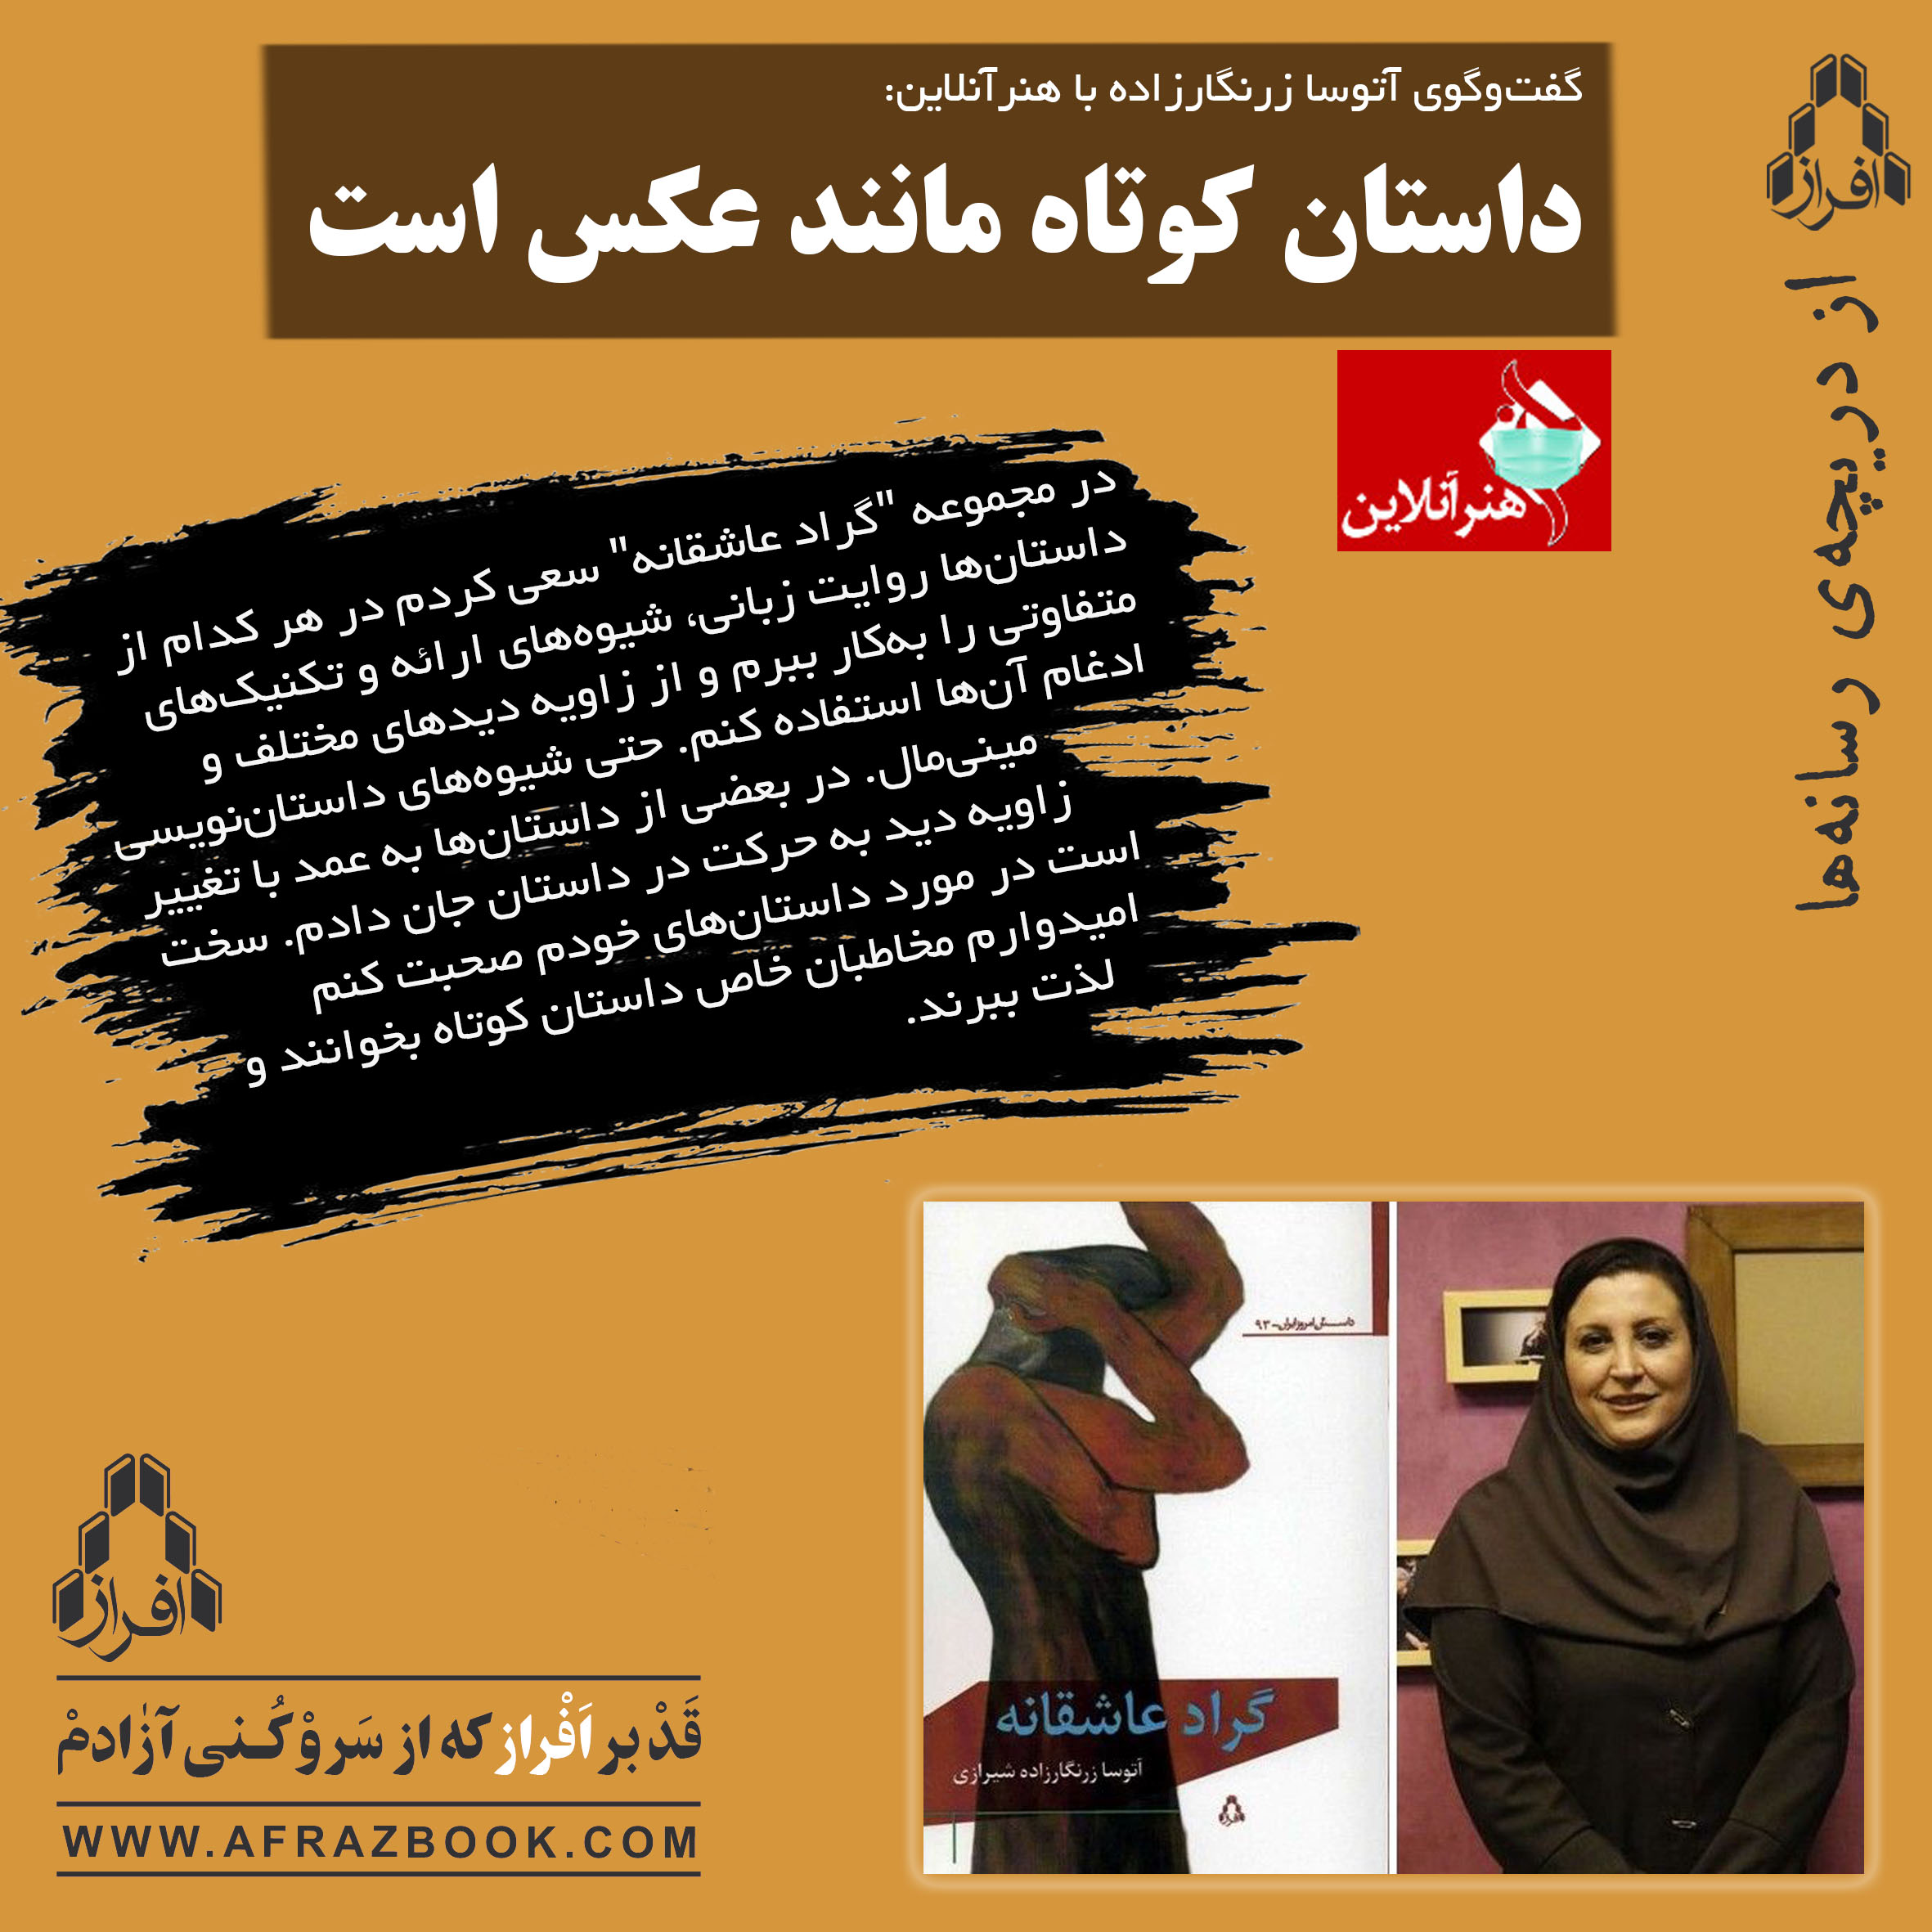 آتوسا زرنگارزاده‌ شیرازی در گفت‌وگو با هنرآنلاین: داستان کوتاه مانند عکس است.